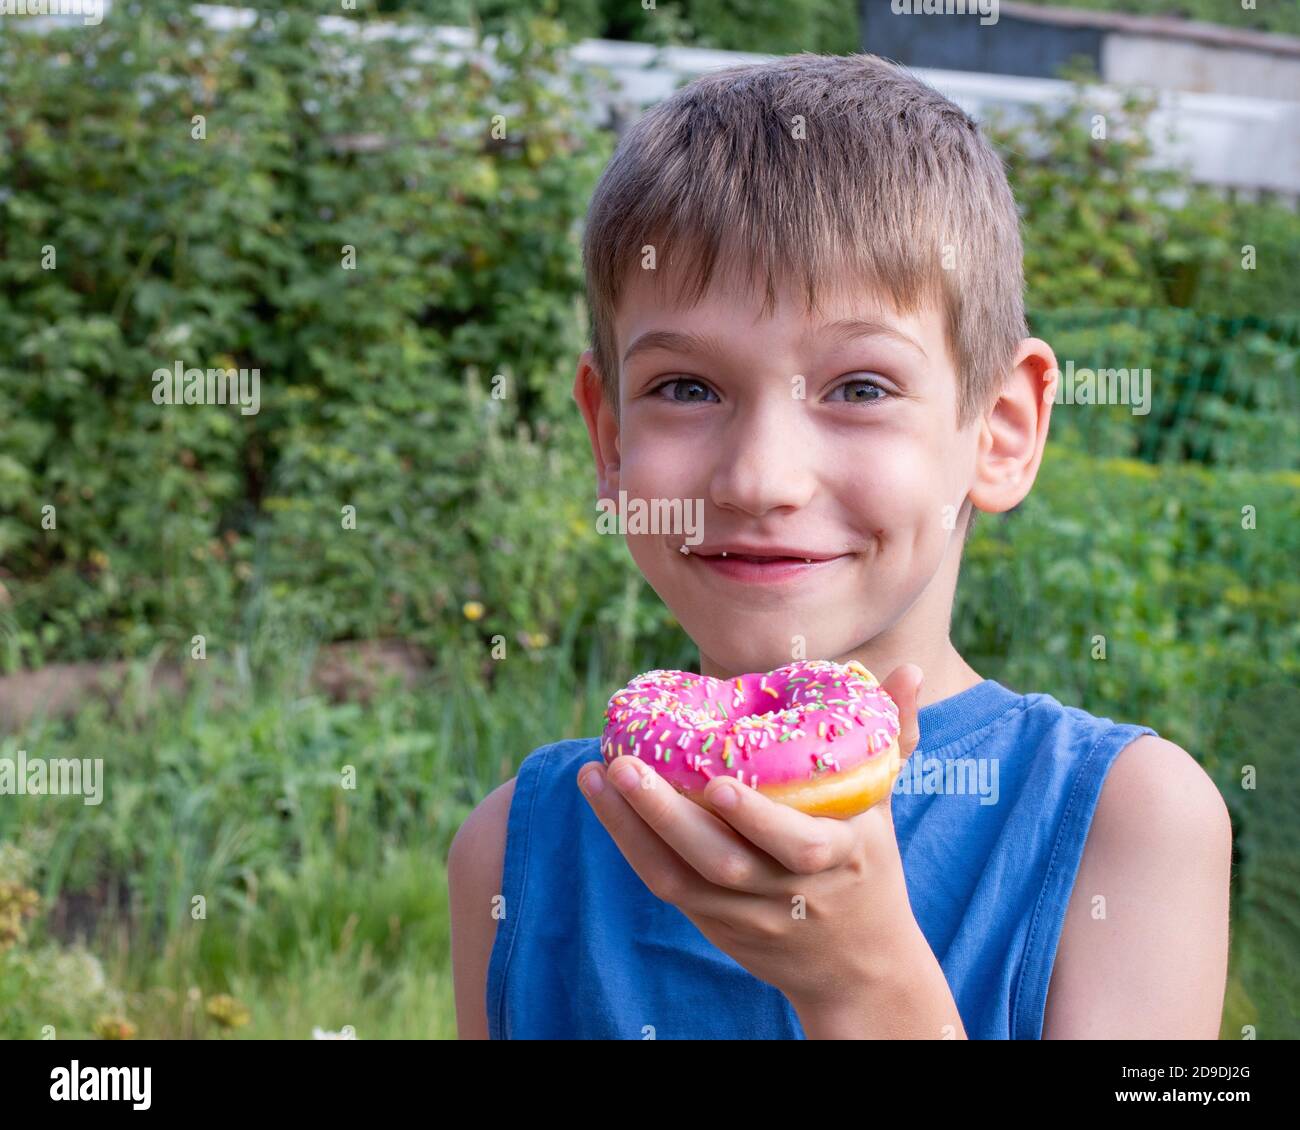 Un enfant heureux mange un beignet rose dans le parc. Concept alimentaire malsain, grignotage de nourriture douce. Les enfants adorent les aliments sucrés Banque D'Images